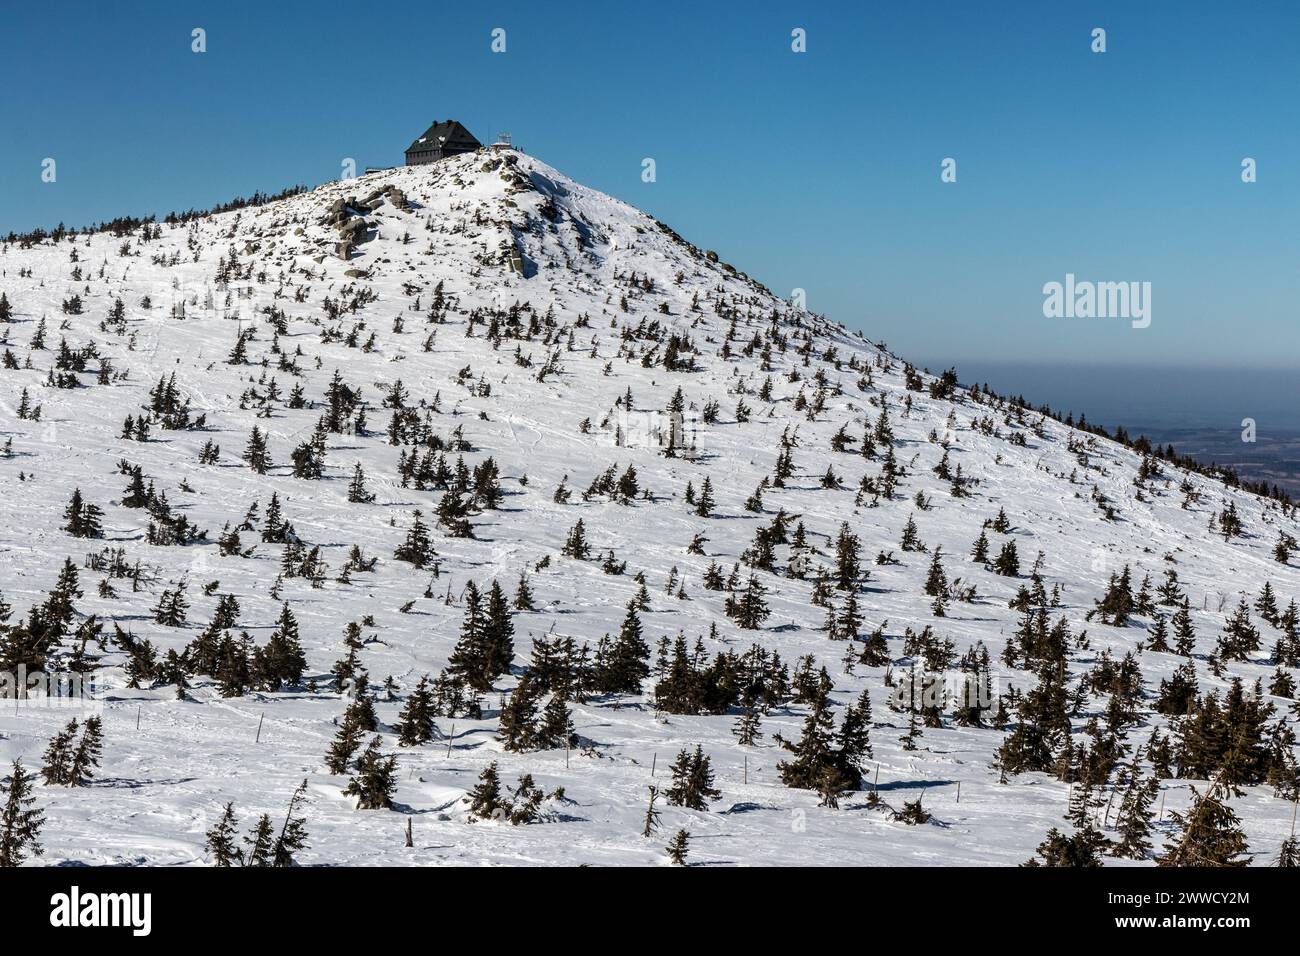 Paysage des montagnes de Krkonose (géant), République tchèque. Cabane de montagne polonaise sur Szrenica visible. Banque D'Images